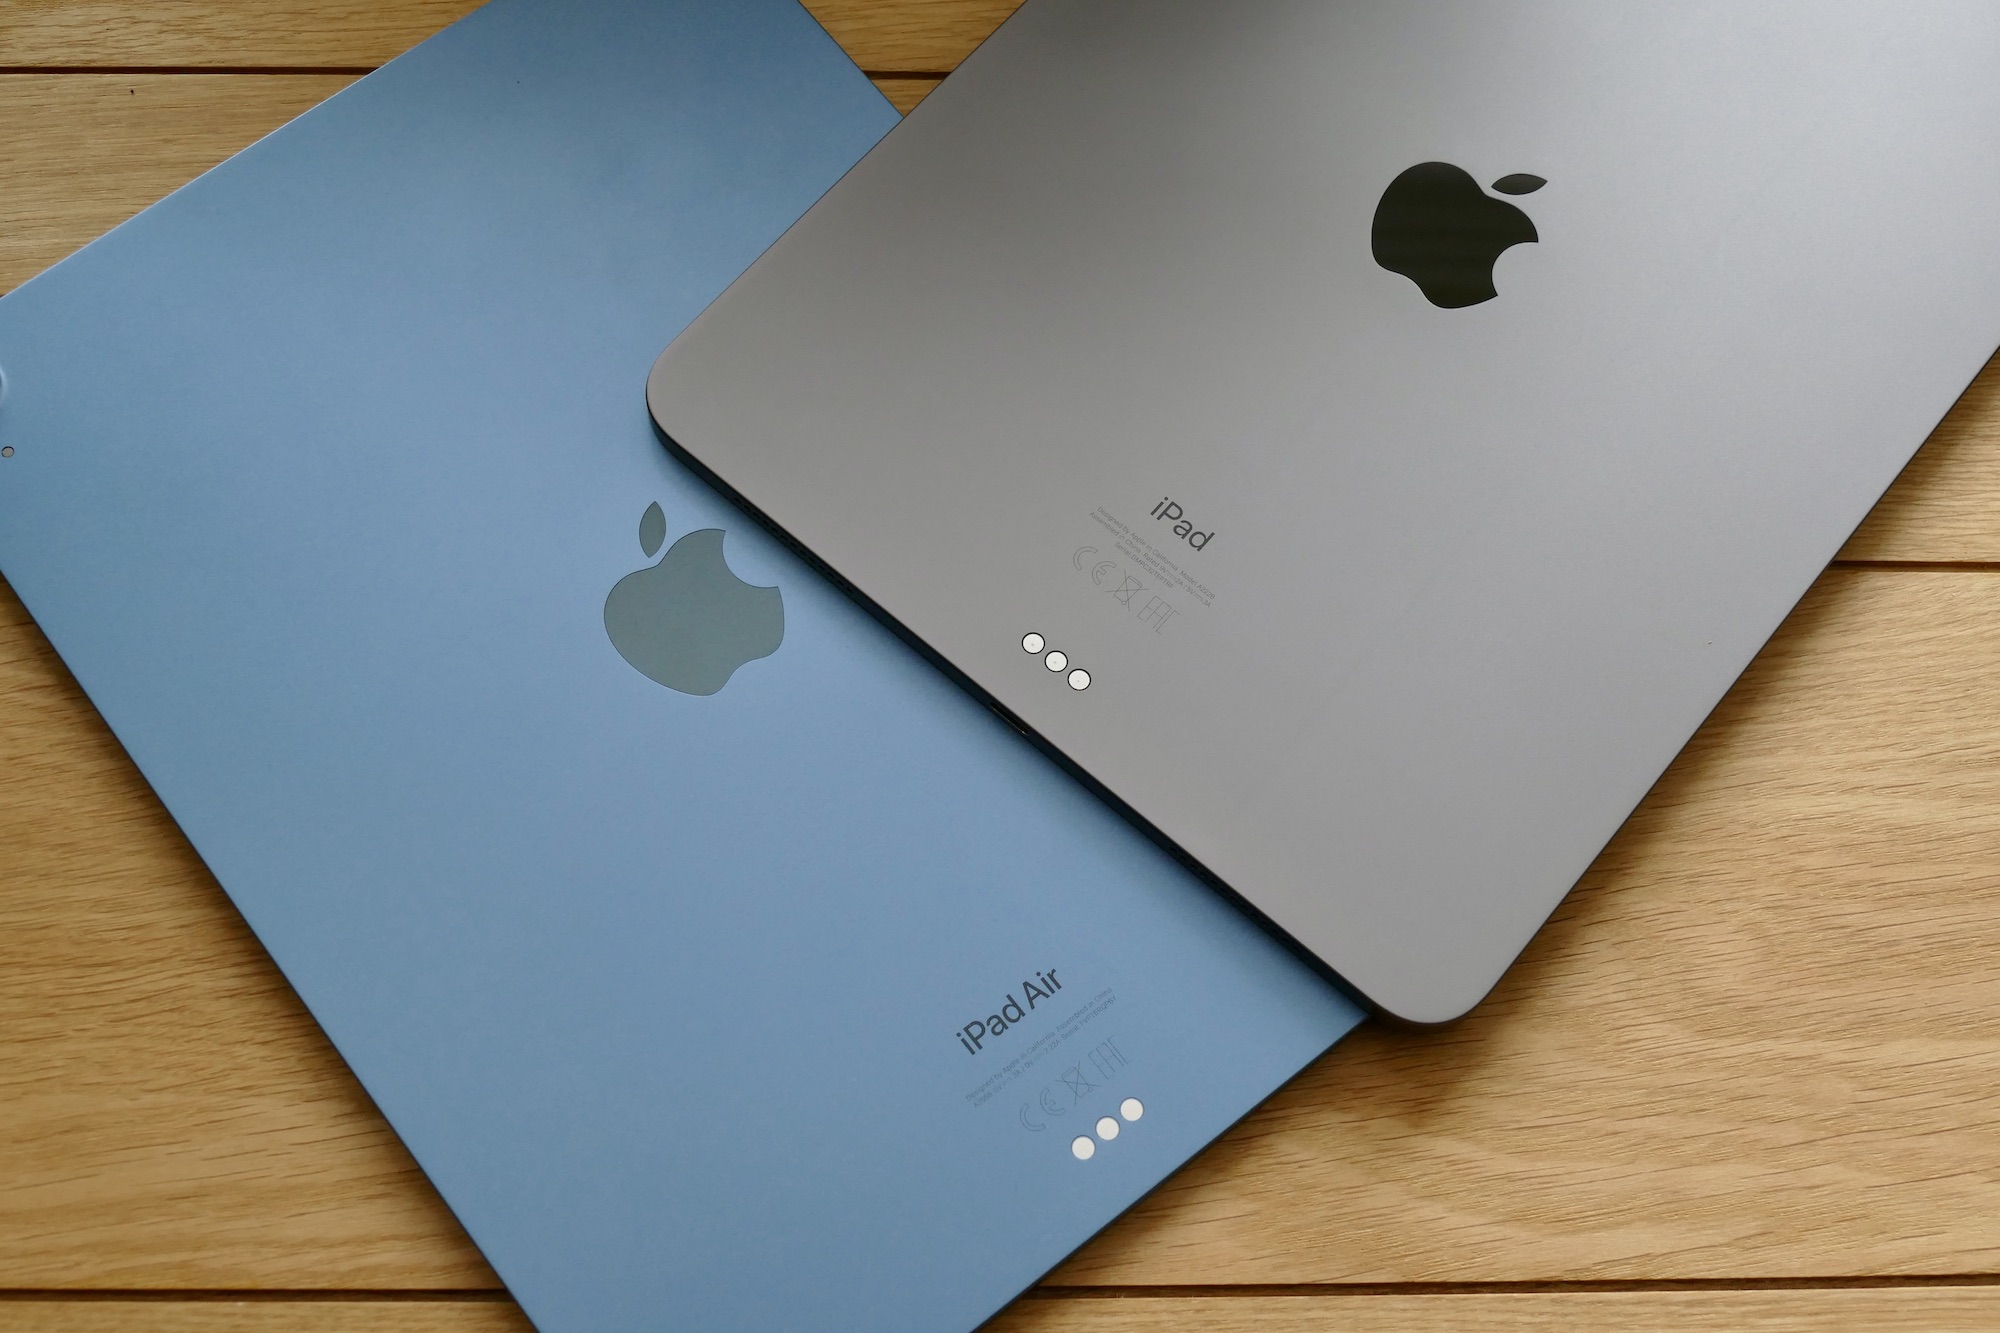 As costas do iPad Air e iPad Pro da Apple, com os tablets colocados sobre uma mesa.